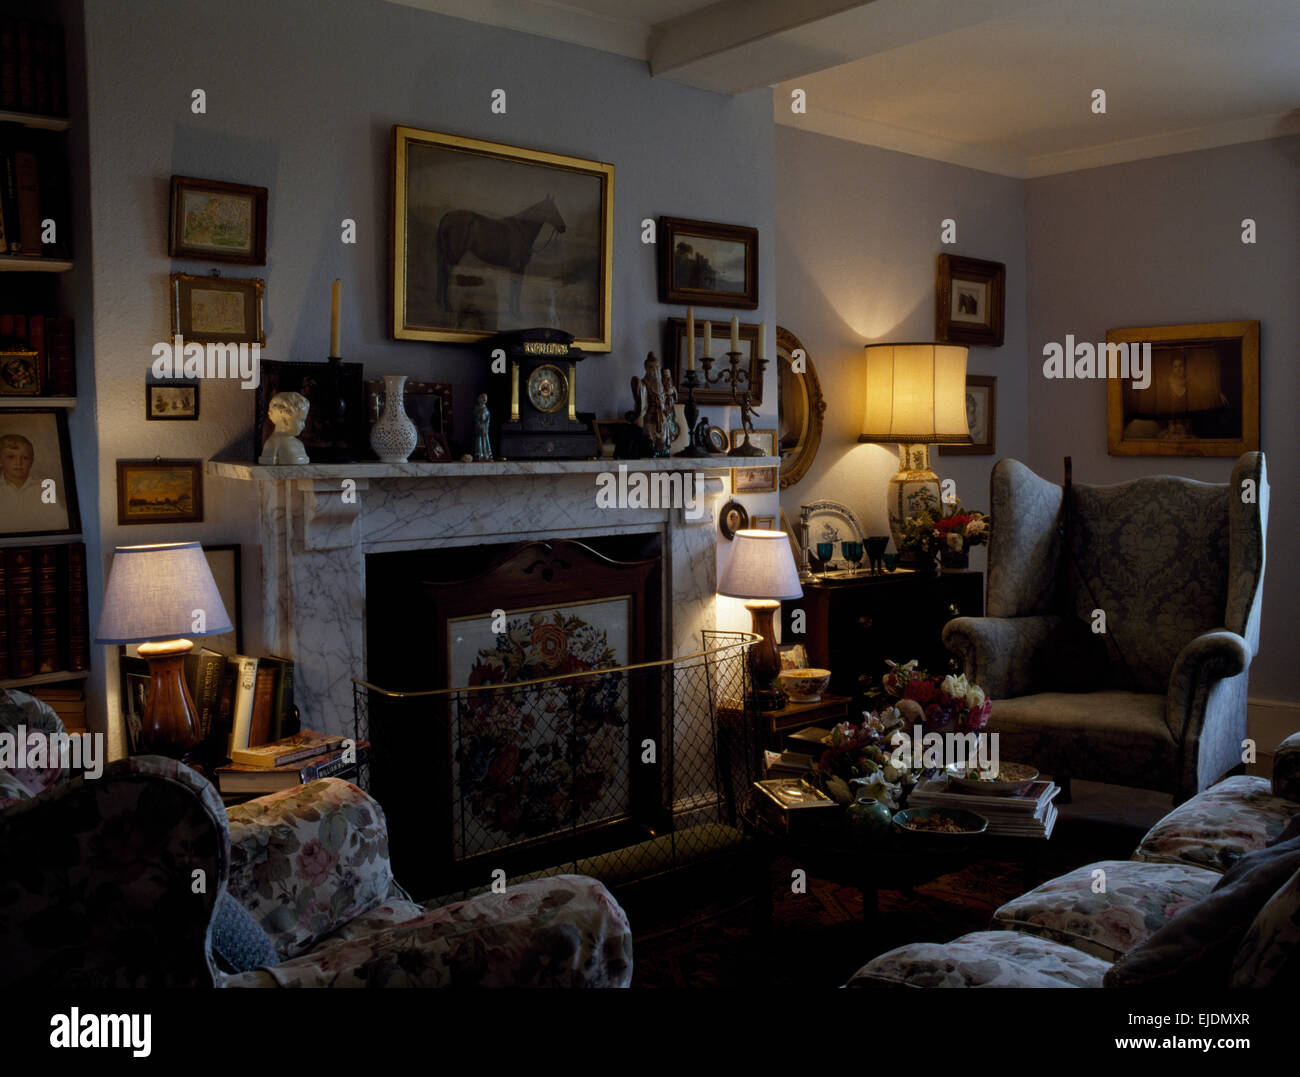 Les lampes allumées et cheminée en marbre avec coupe-feu métallique dans un salon confortable Banque D'Images